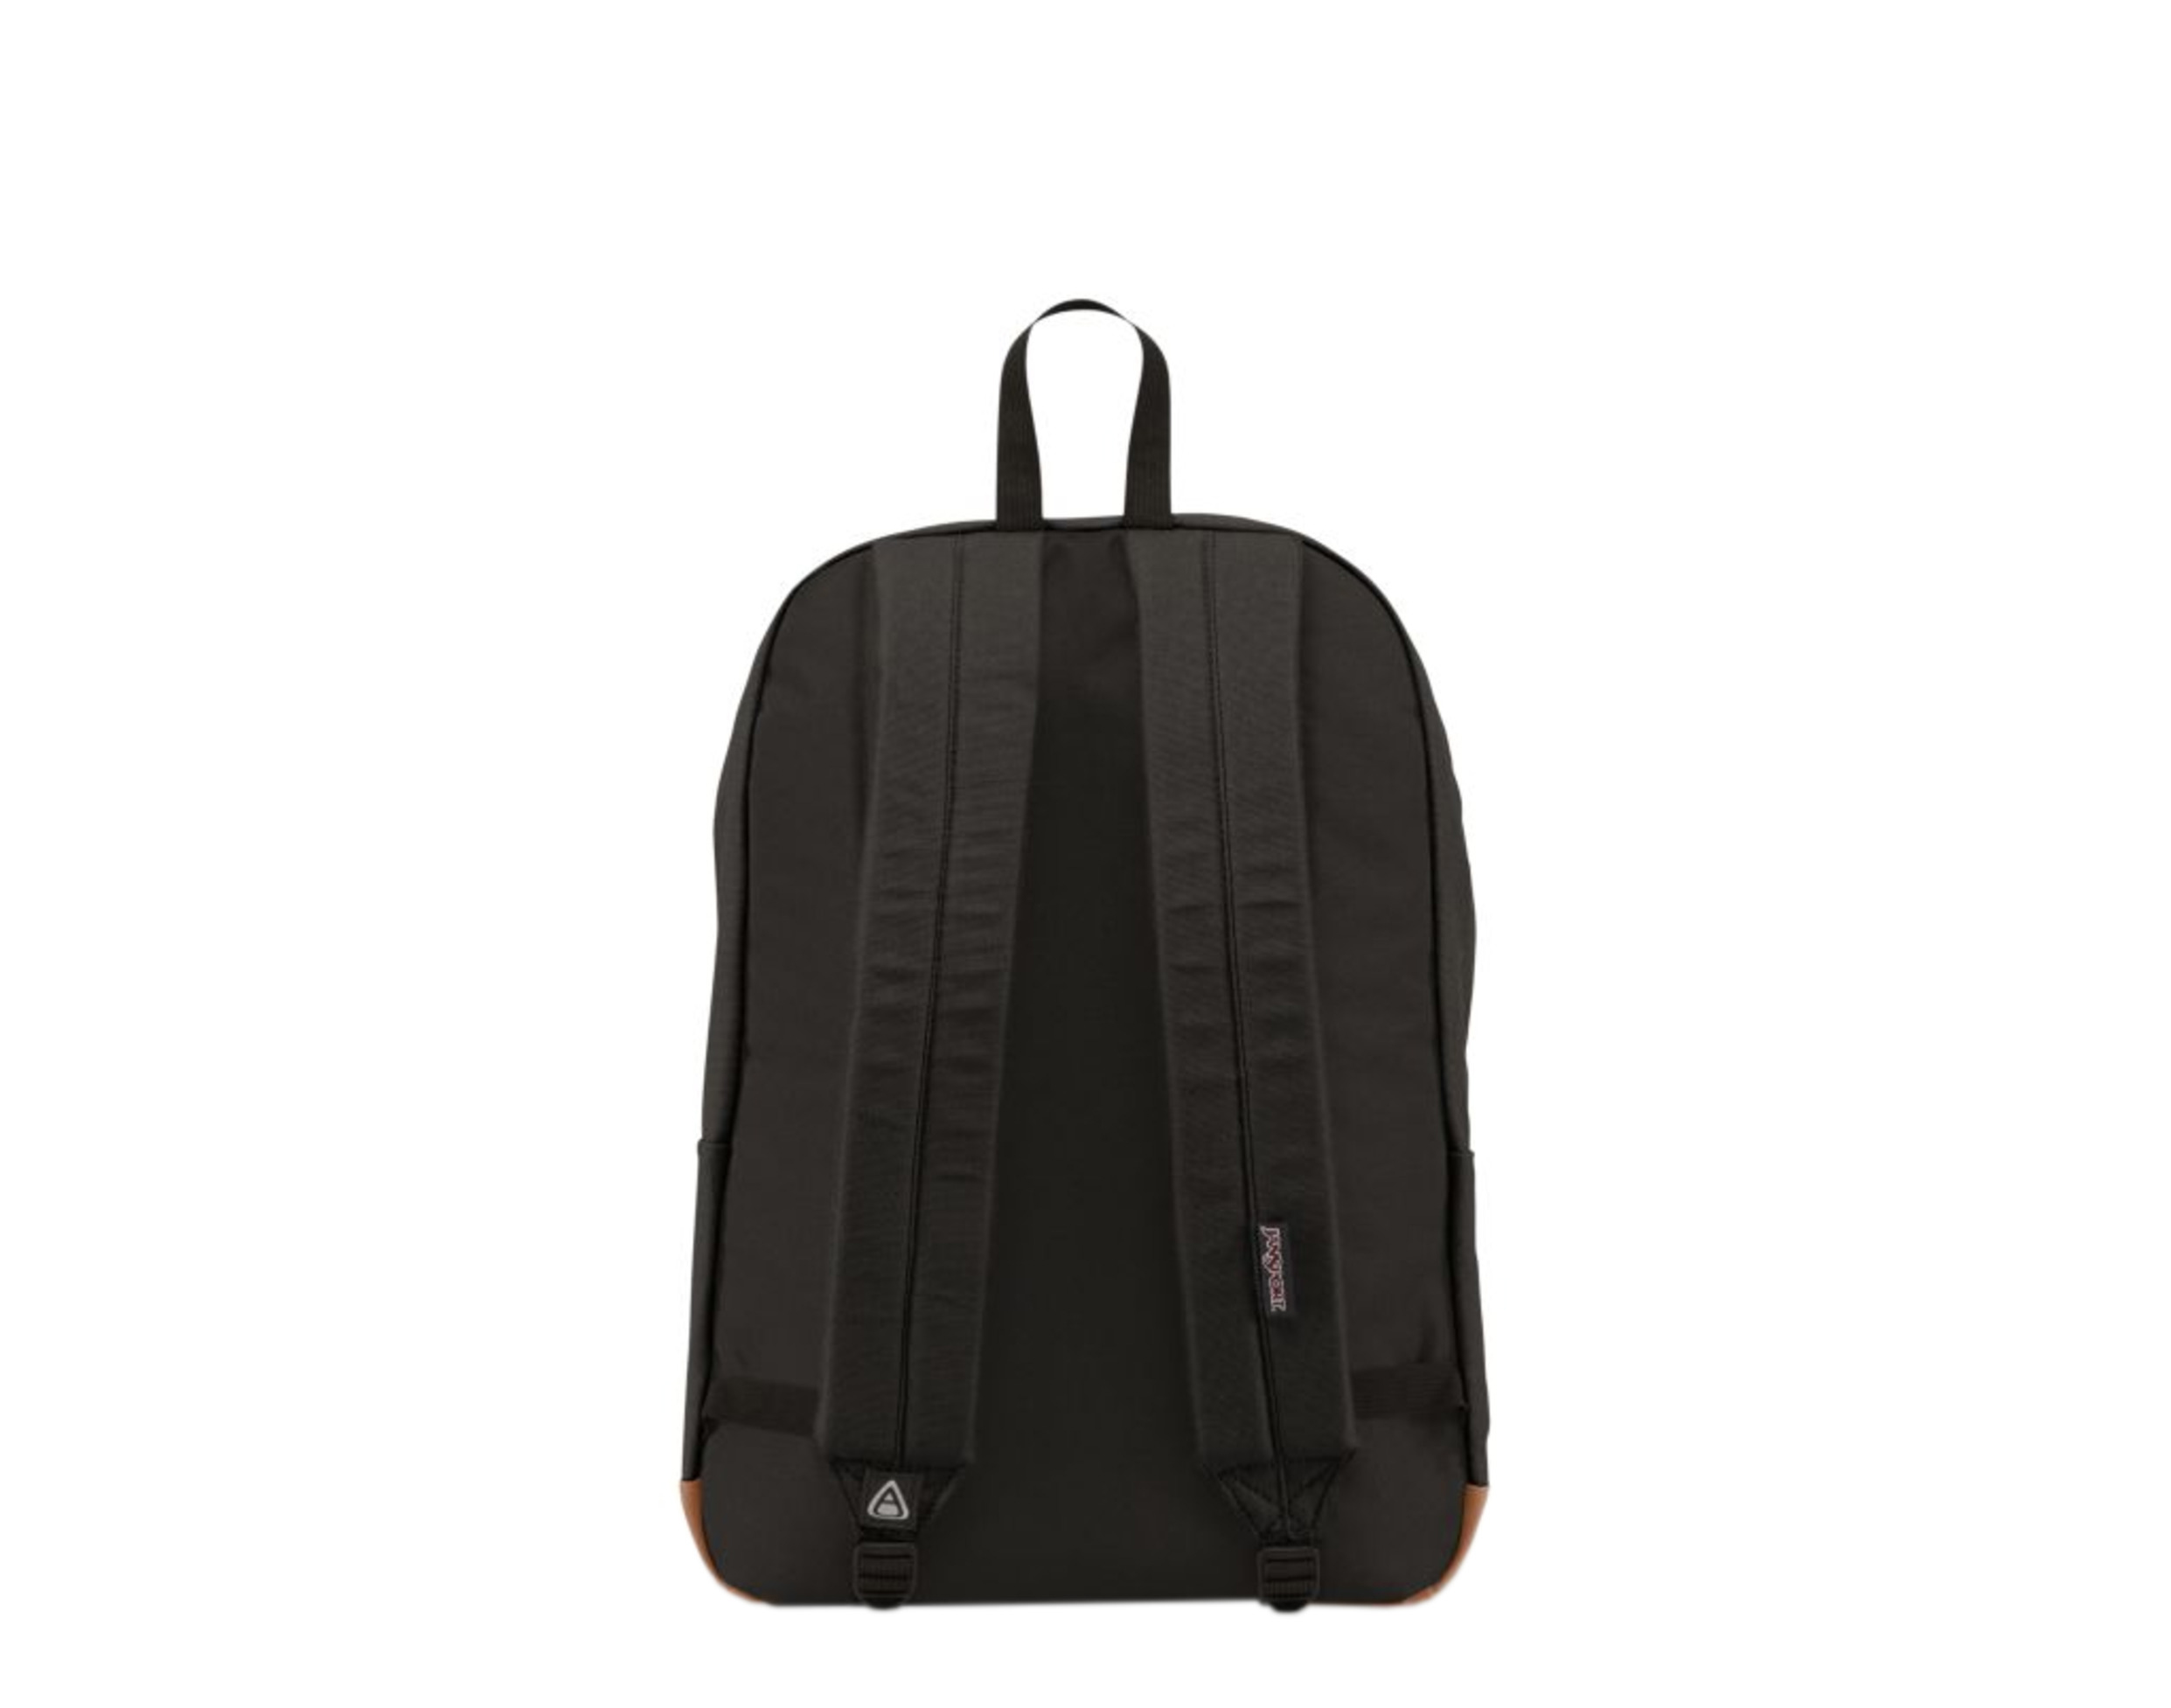 Jansport Baughman Black Canvas Backpack - image 3 of 3